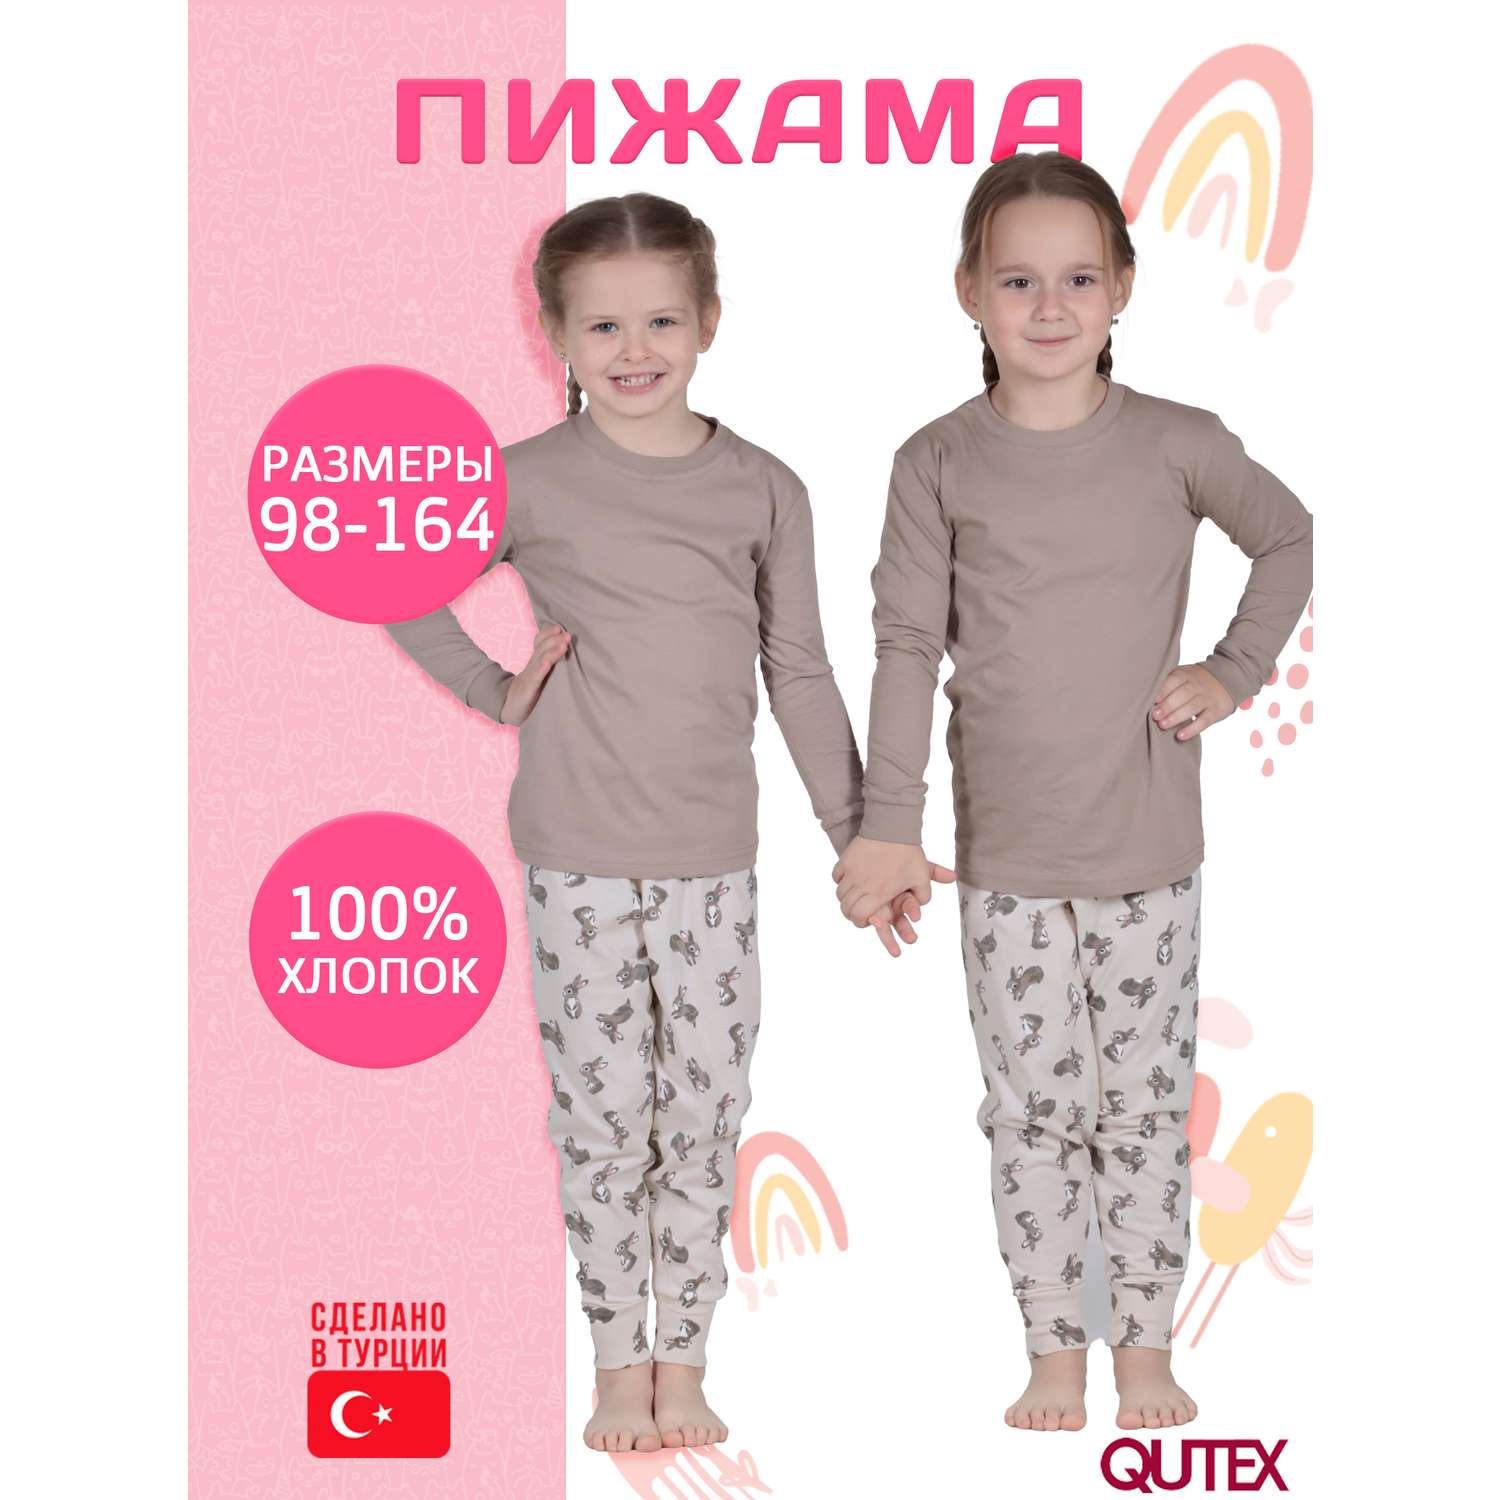 Пижама QUTEX 2301-001-1Q124 - фото 2